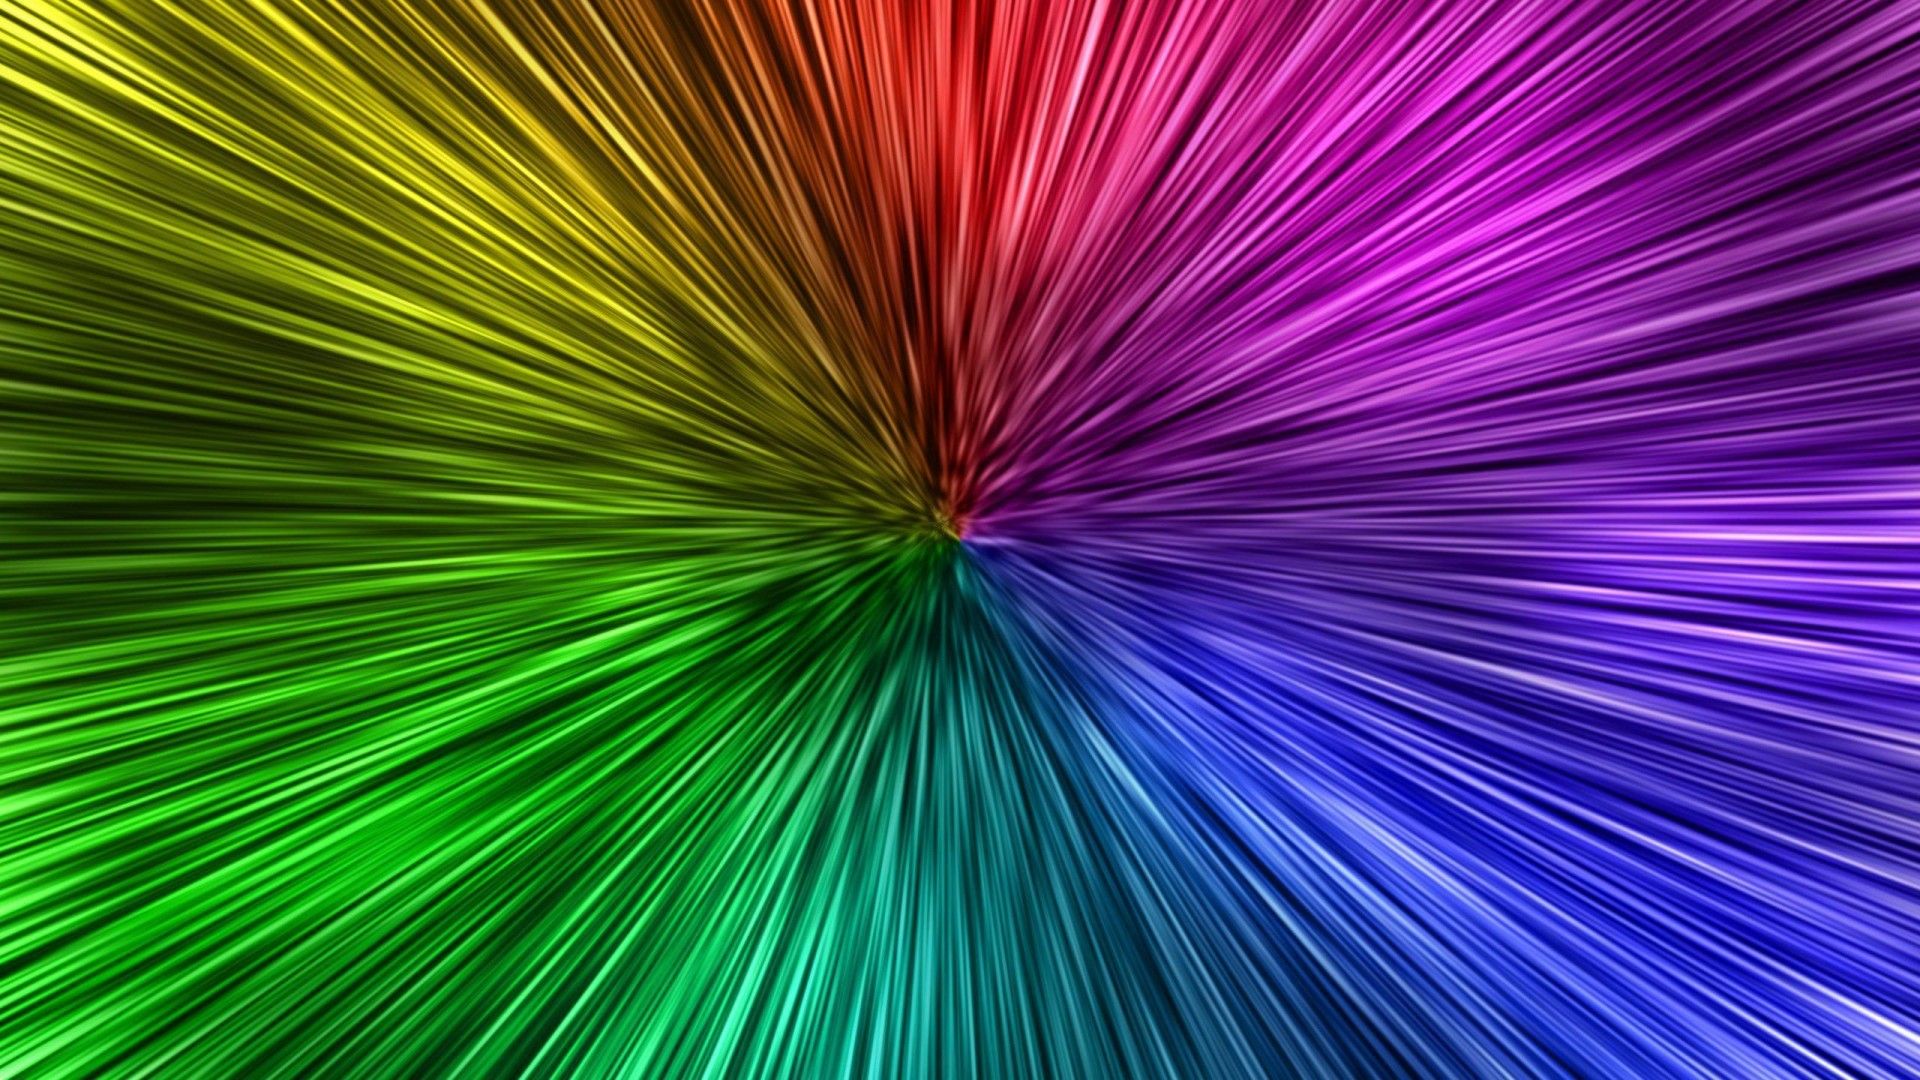 Neon Tie Dye Wide Wallpaper Desktop Wallpaper HD 4k Windows 10 Mac Apple Colourful Image Background Download Wallpaper 1920x1080